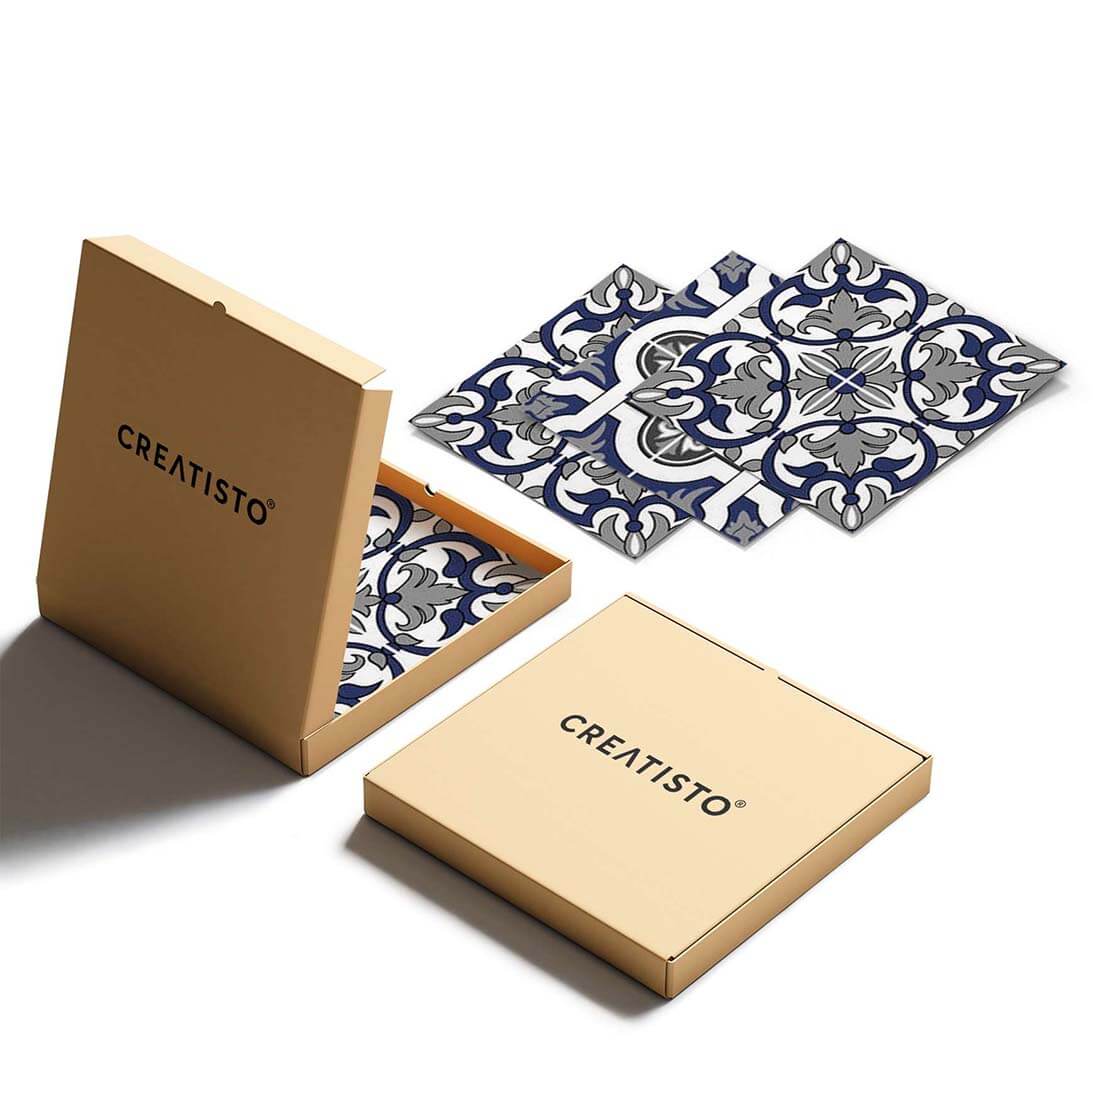 Klebefliesen Azulejo Classic - Verpackung - creatisto pds2